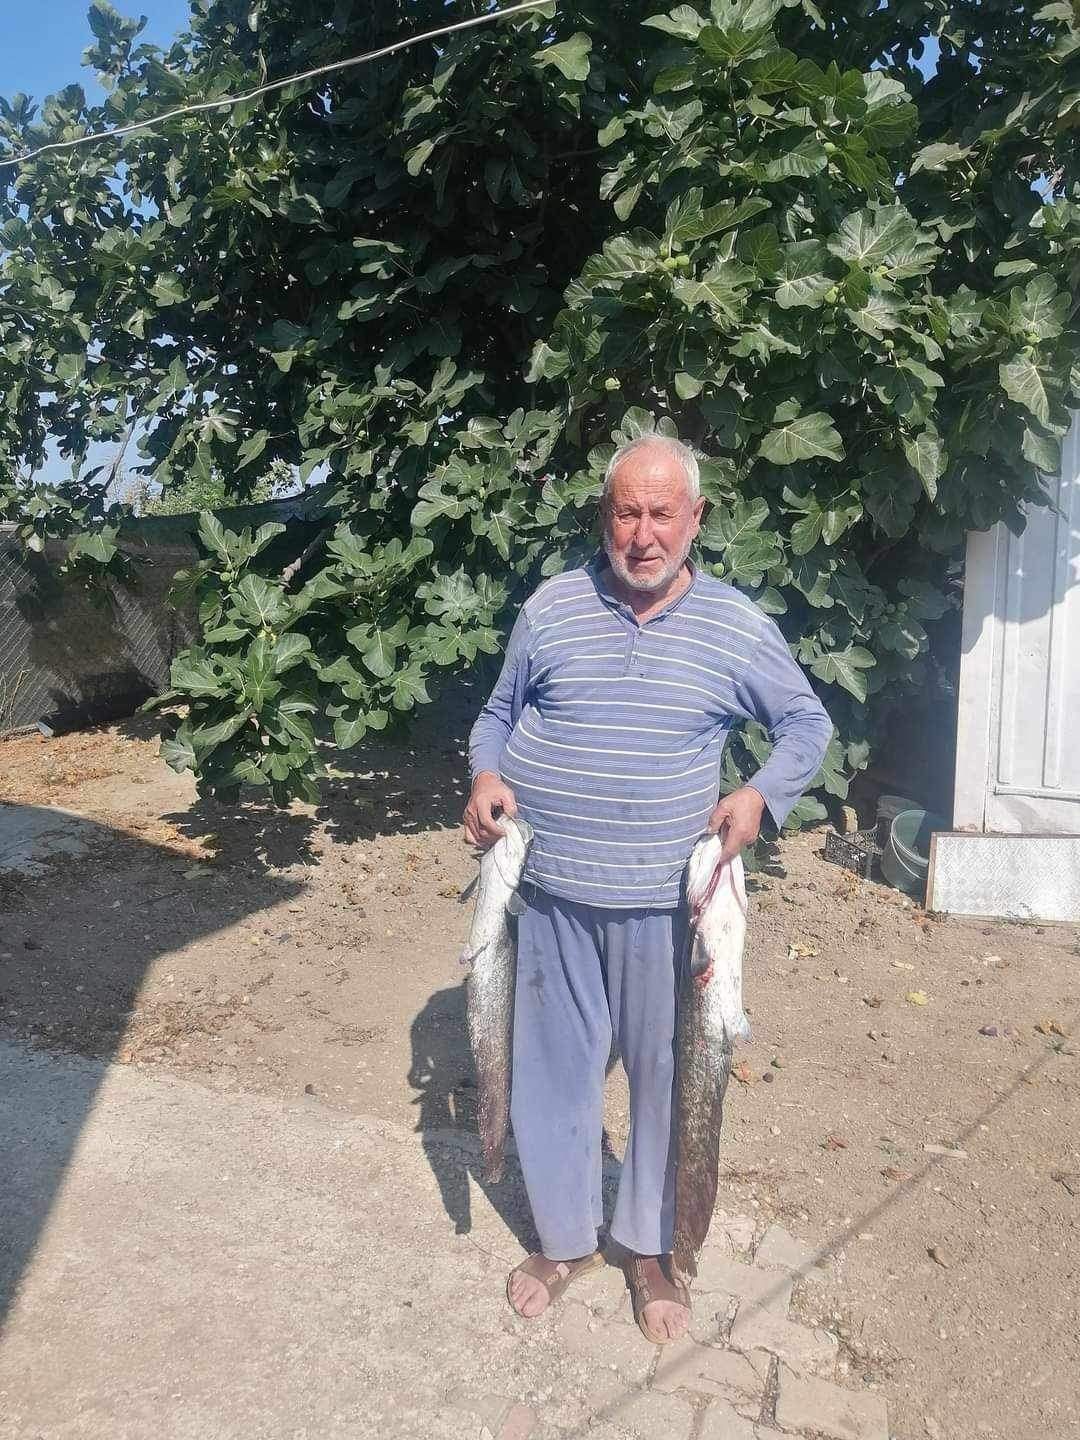 İznik Gölü’nde 80 yaşındaki adam boğularak hayatını kaybetti